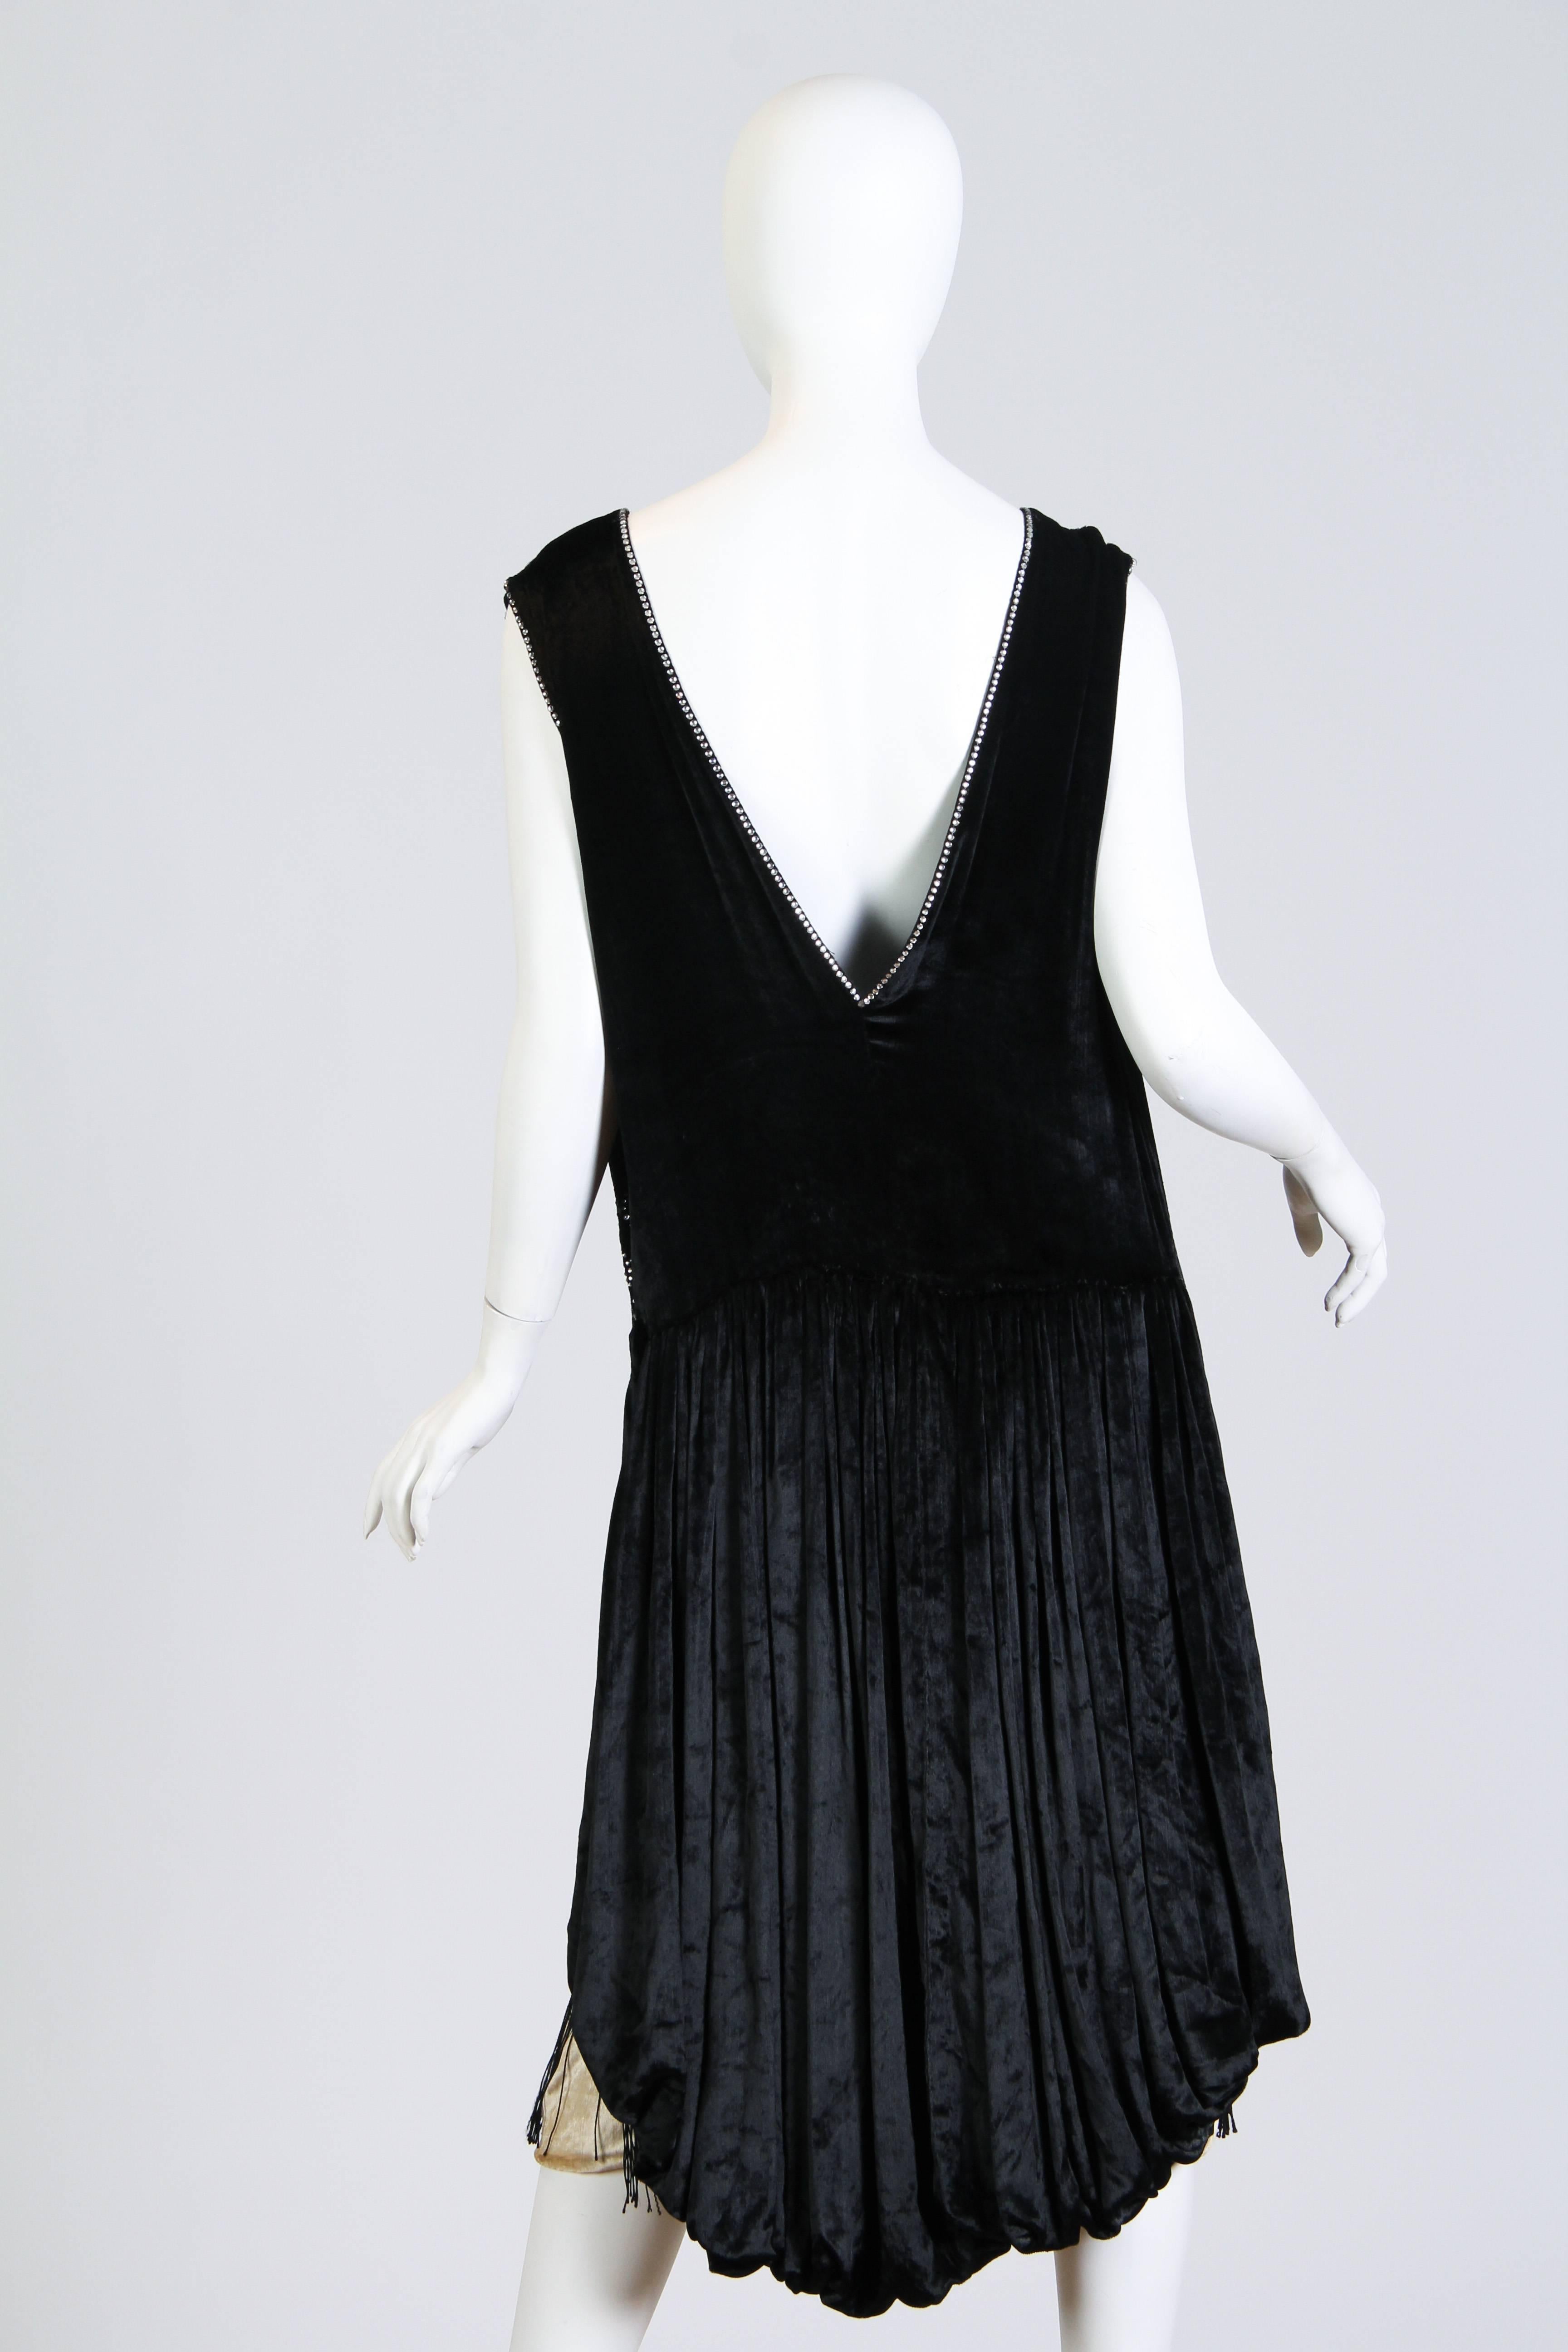 1920 velvet dress